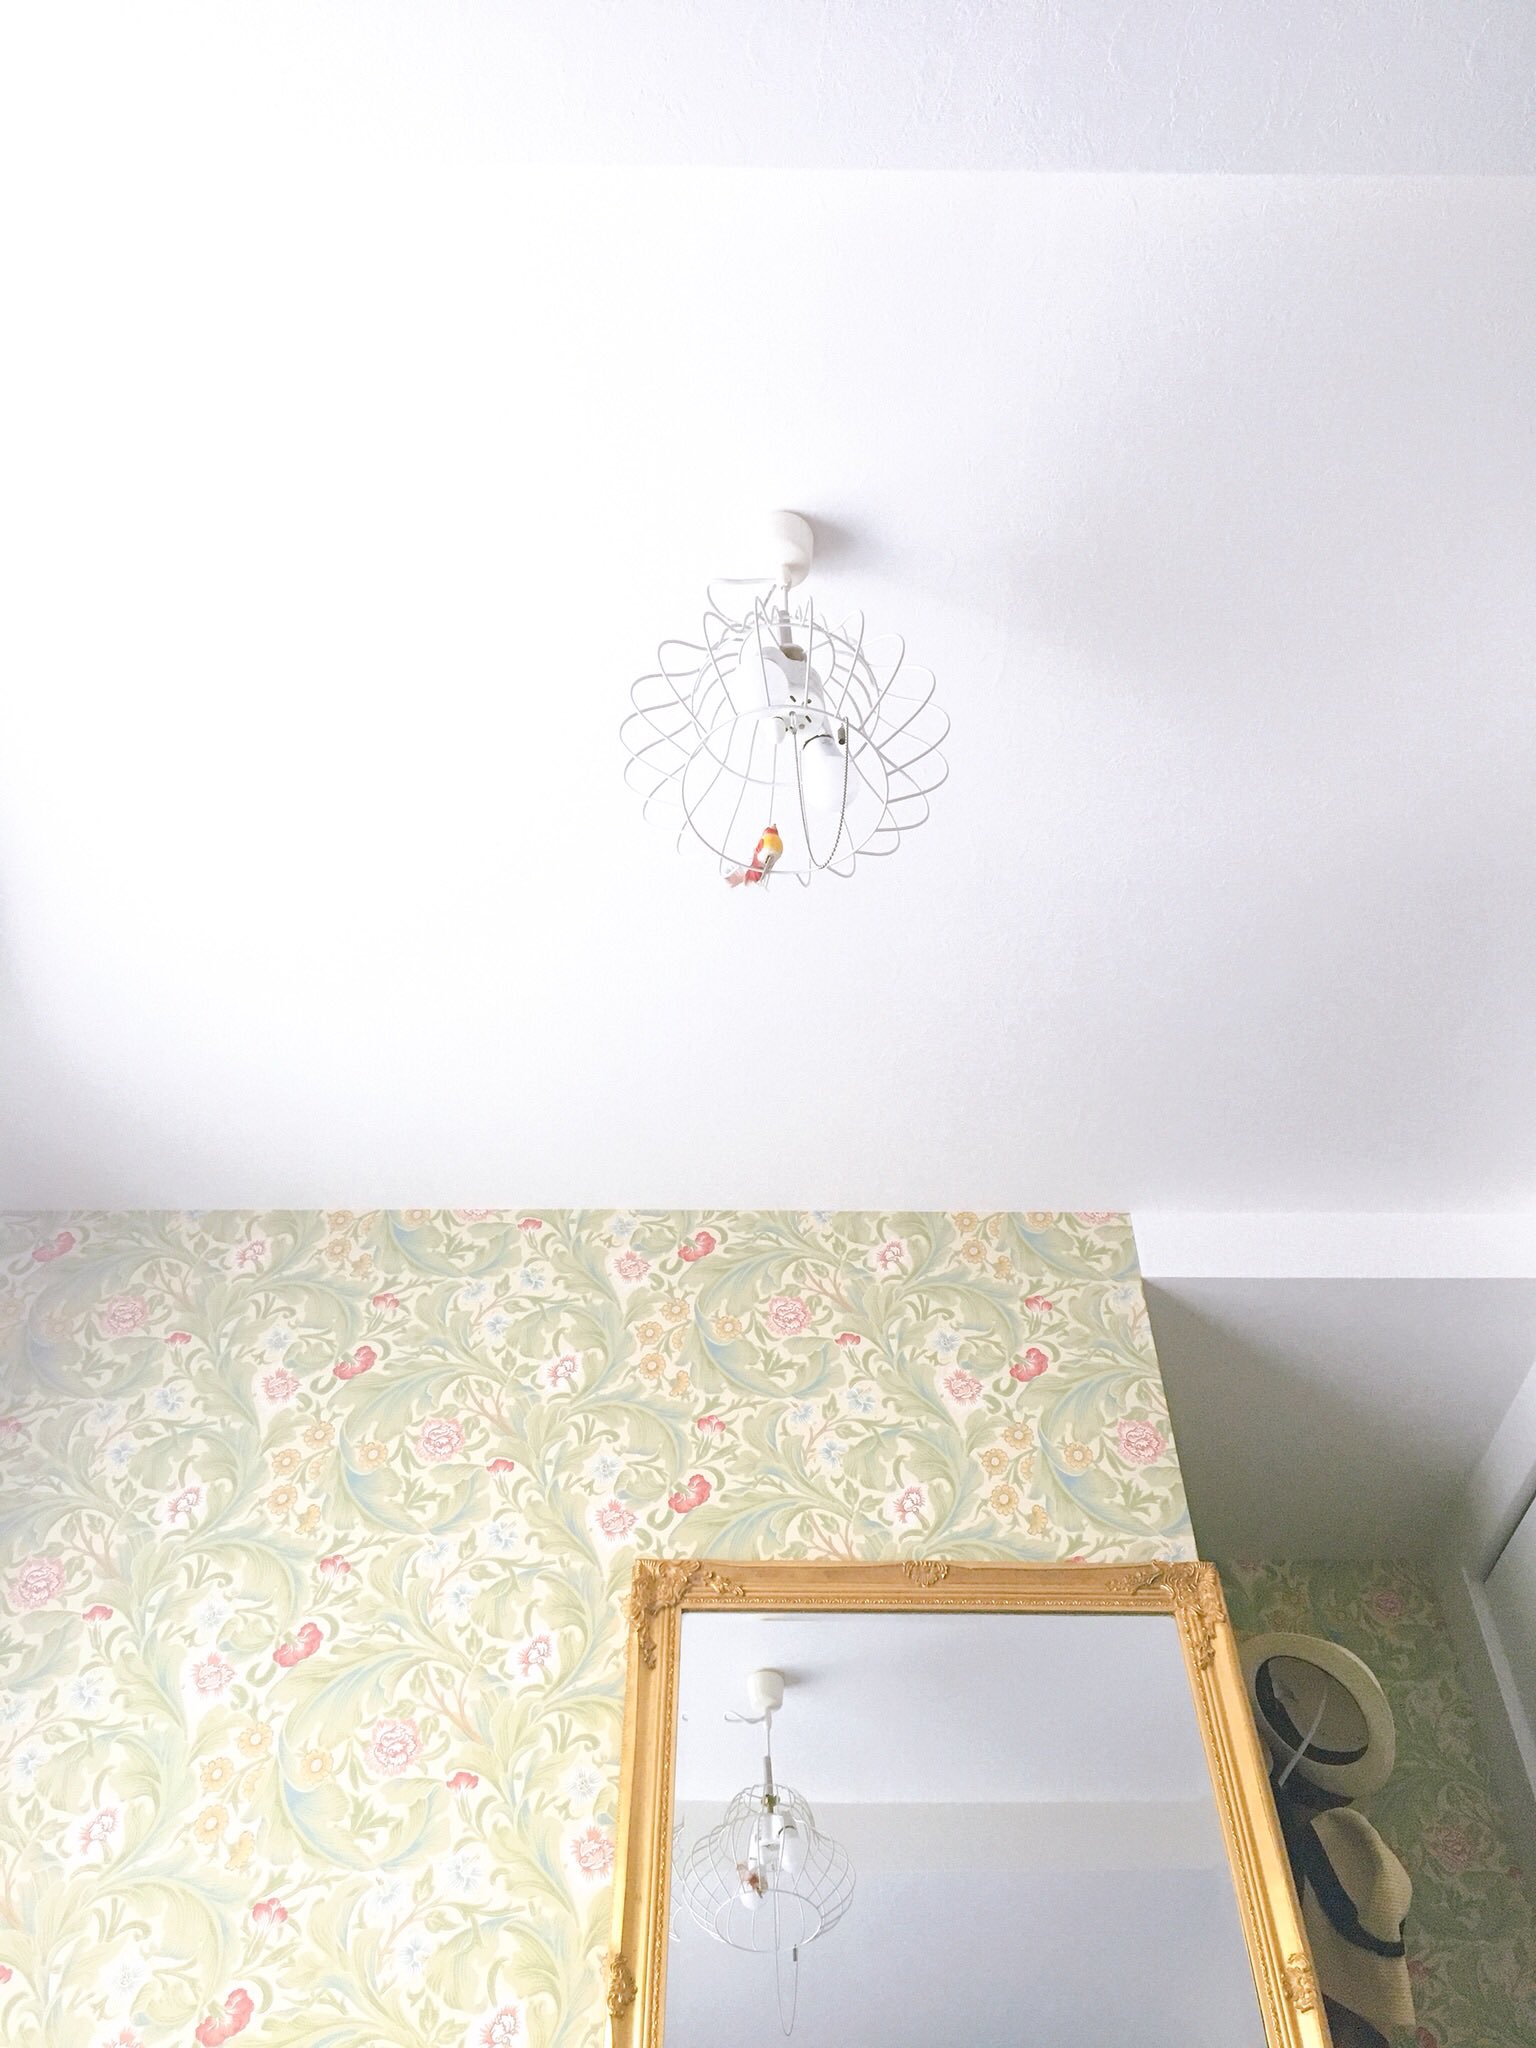 ガーリエンヌ イケてる壁紙 のお部屋がどんどん増えてくれたら これ以上嬉しいことはない ちなみにわが家は ダイニングが青 ここはペンキ塗り 洋室がウィリアム モリスの花柄 トイレが ミントグリーンです